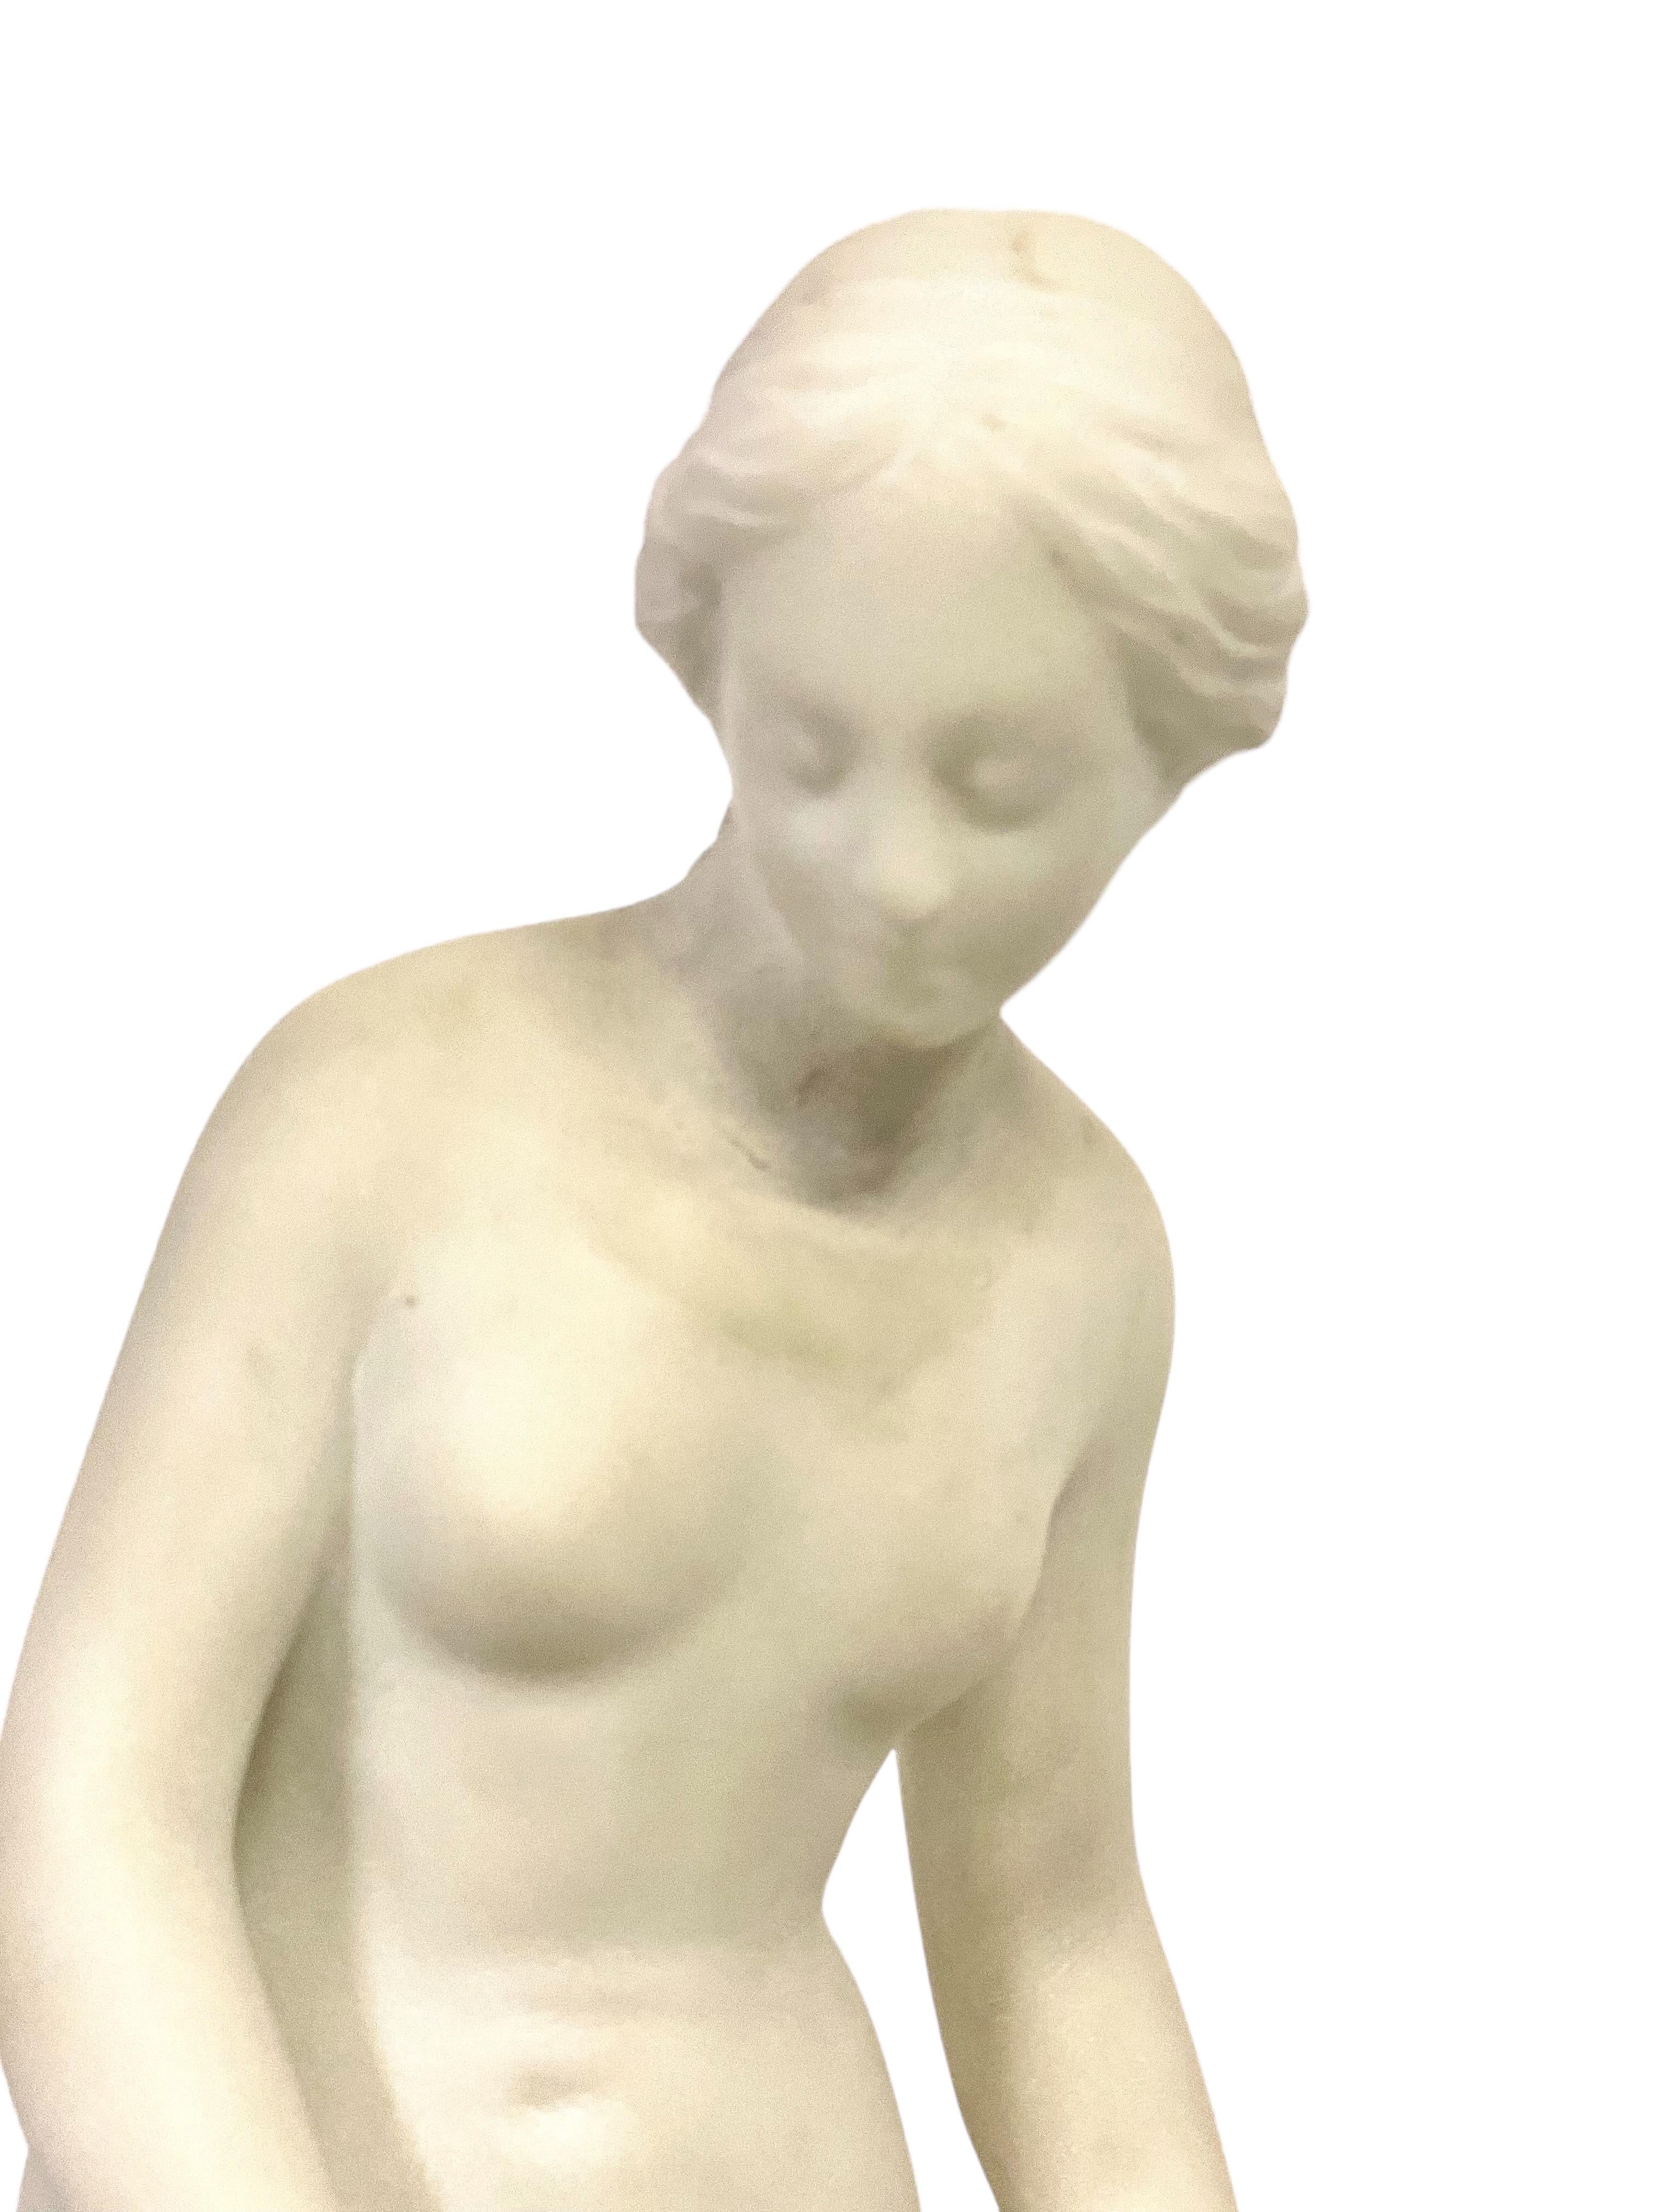 Charmante sculpture en marbre blanc représentant une jeune fille se préparant à se baigner, inspirée du célèbre marbre 